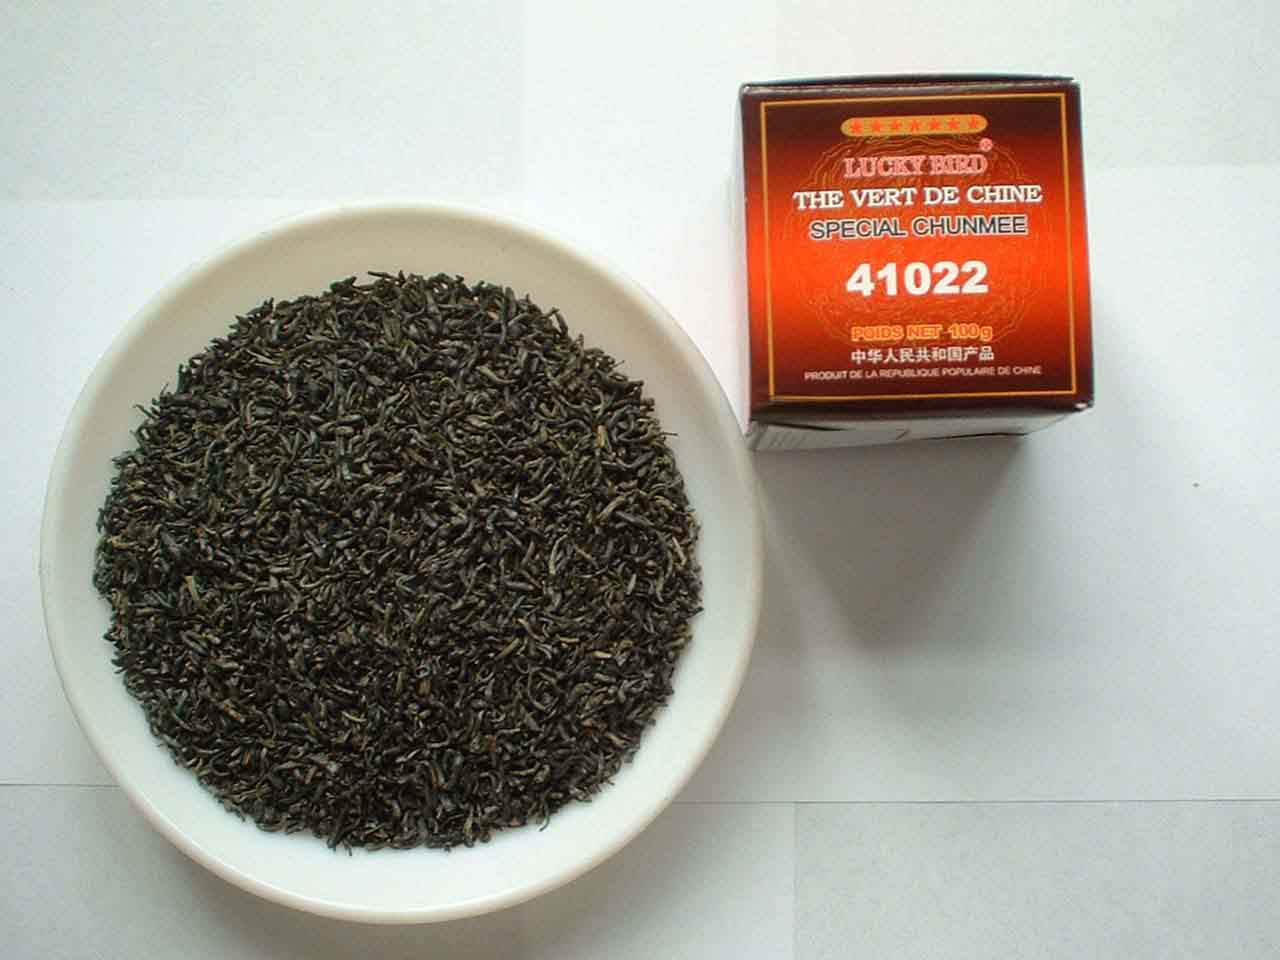 China green tea 41022